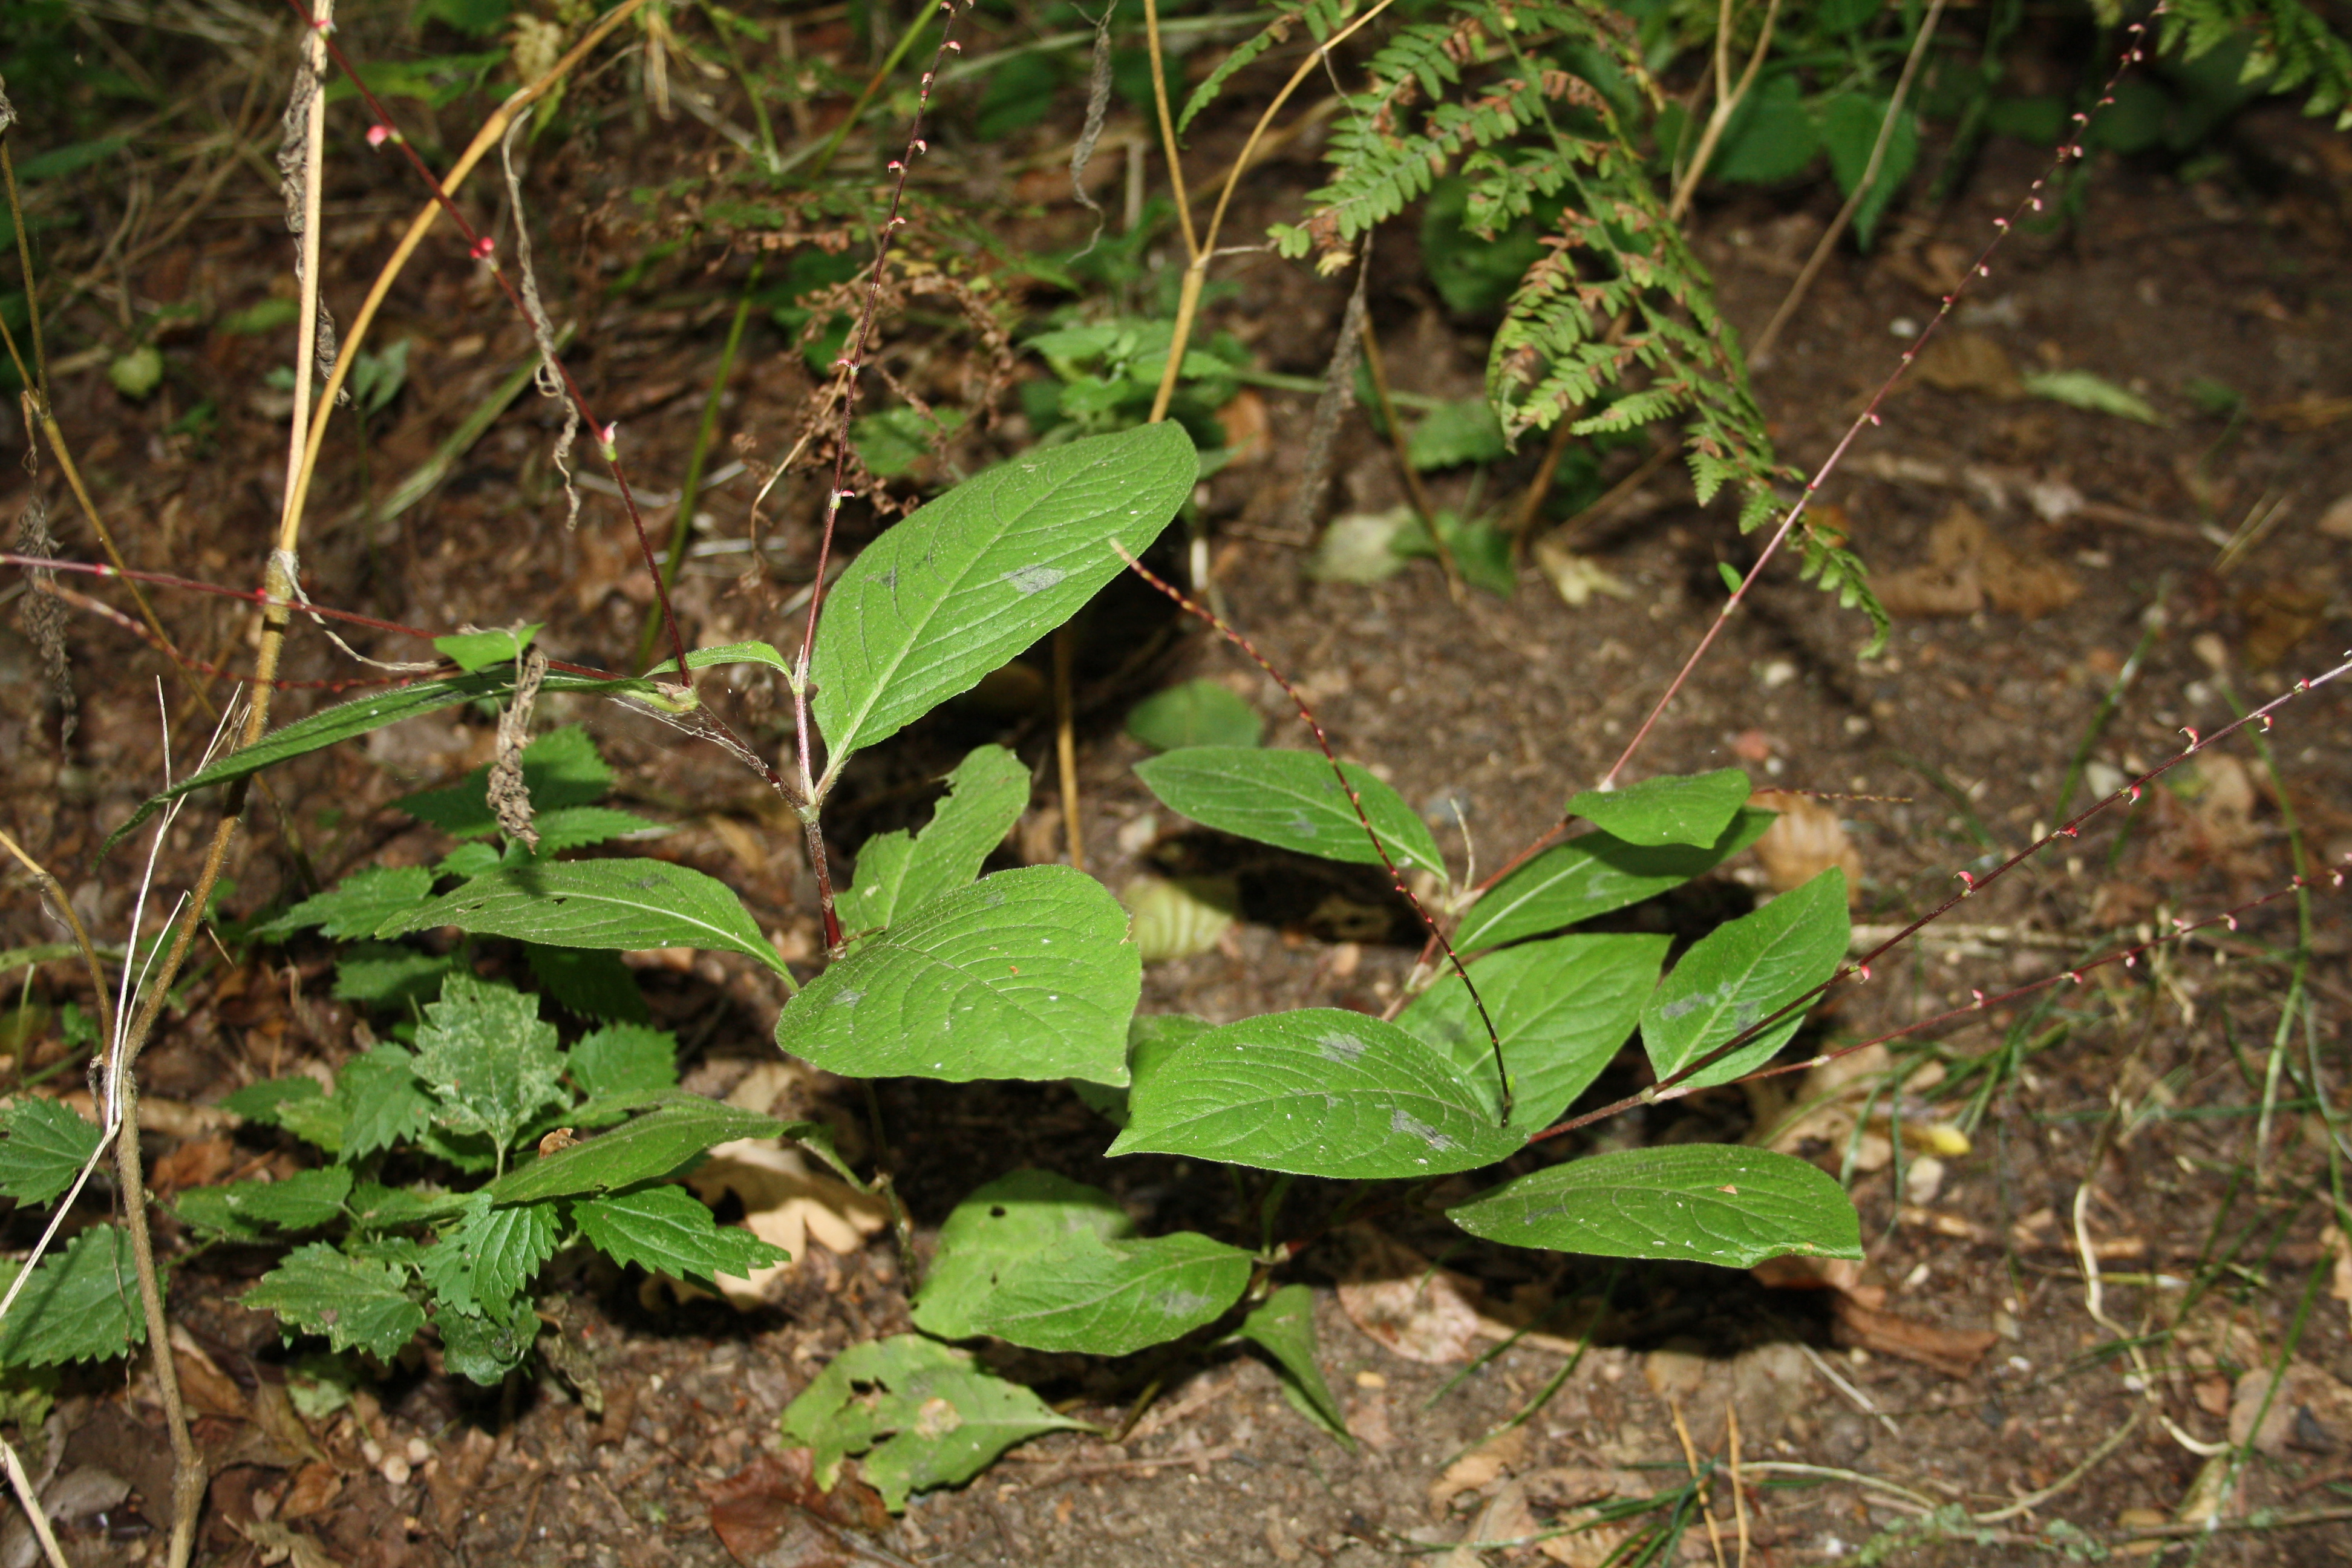 Persicaria virginiana (door thebors)